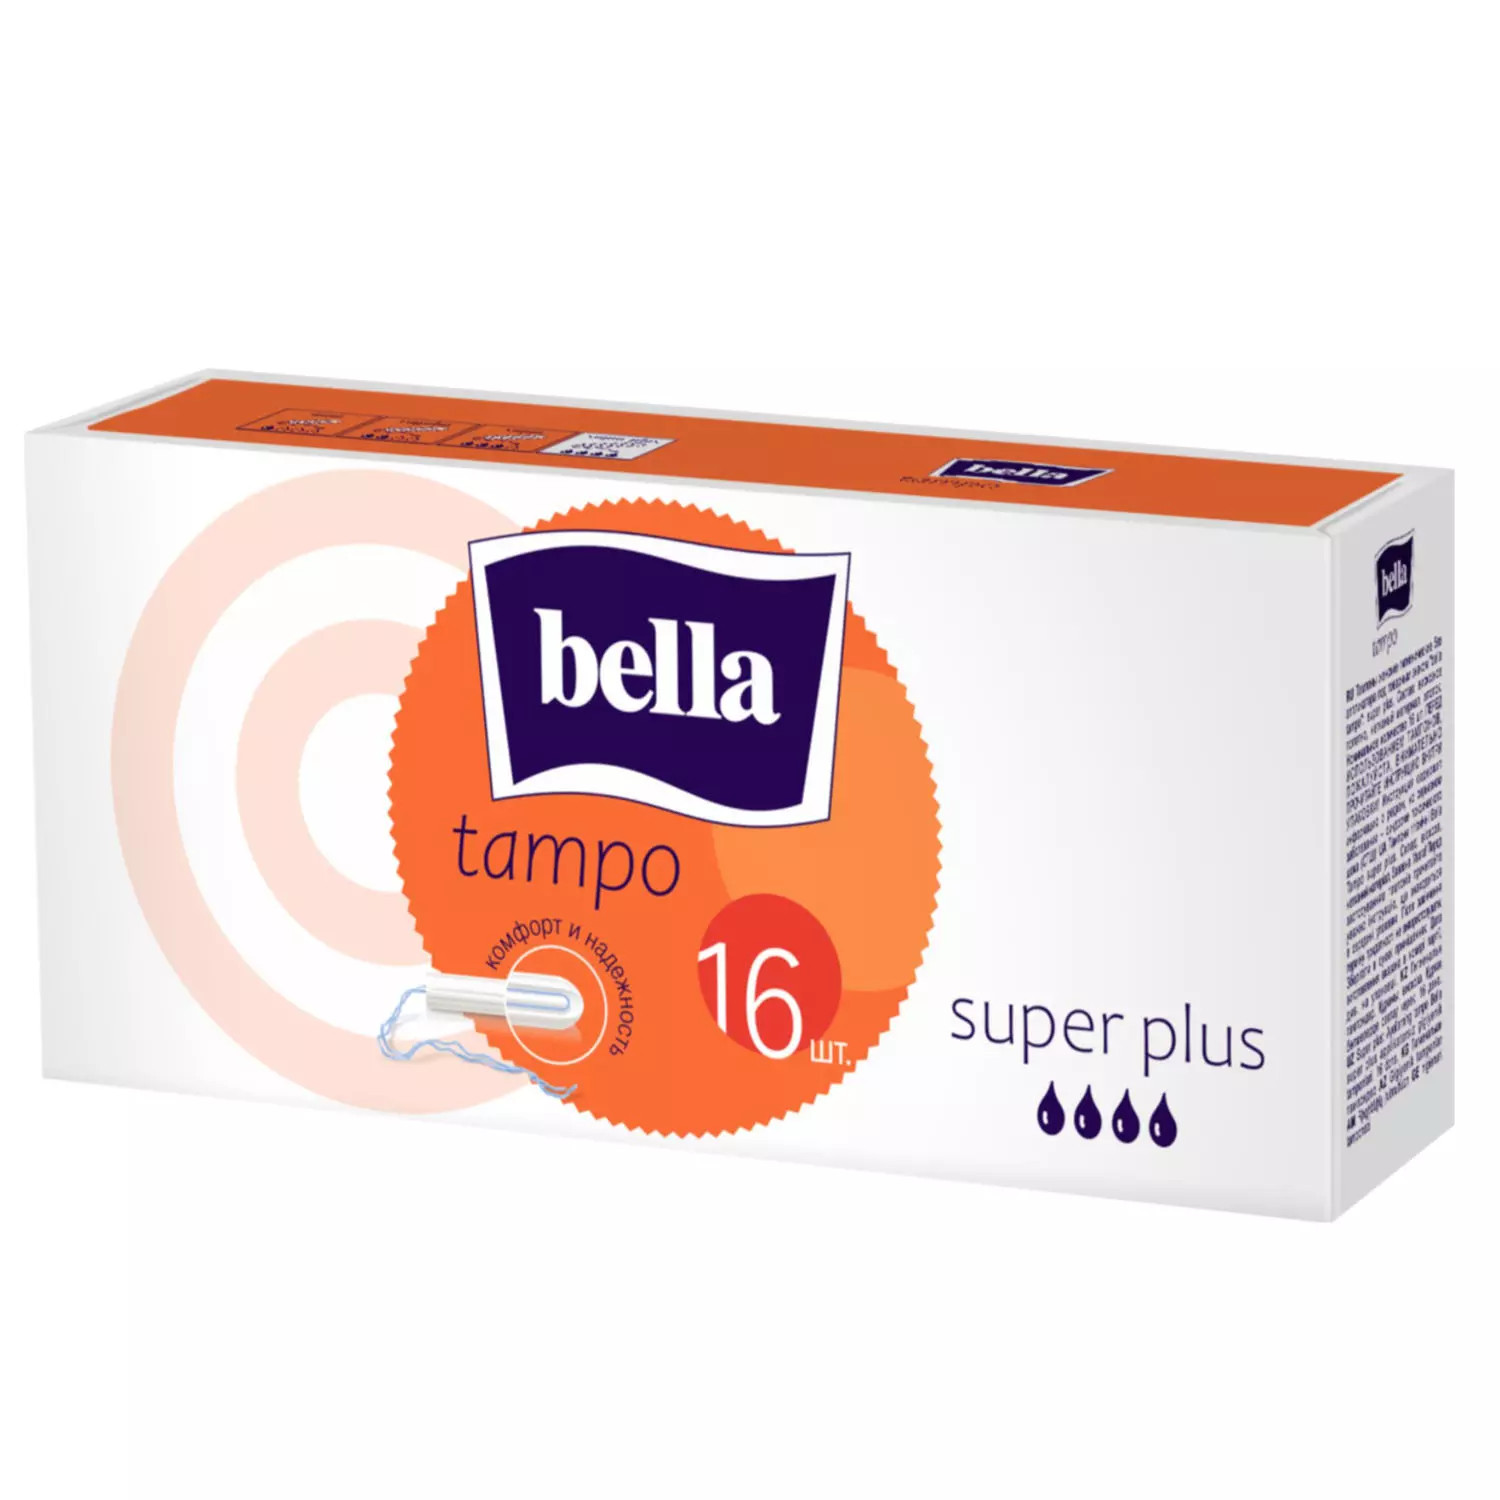 Тампоны Bella, premium comfort Super Plus без аппликатора, 16 шт тампоны bella tampo regular premium comfort 2 уп х 8 шт